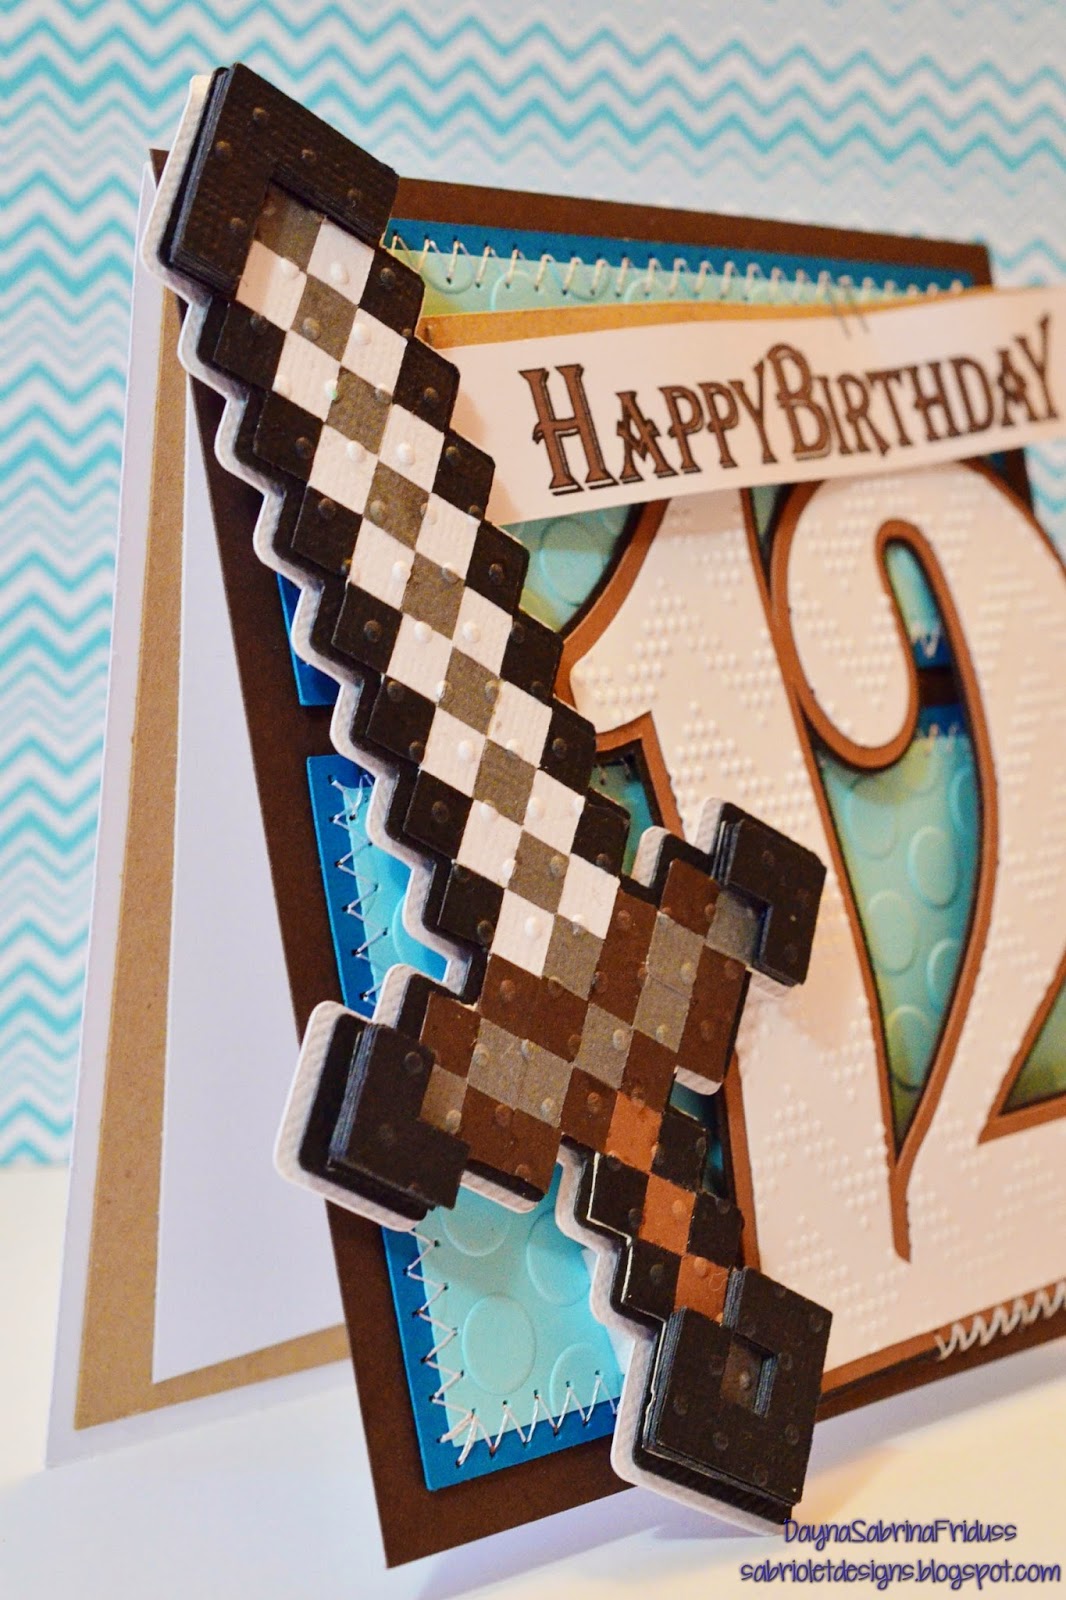 Download Sabriolet Designs: A Minecraft Birthday